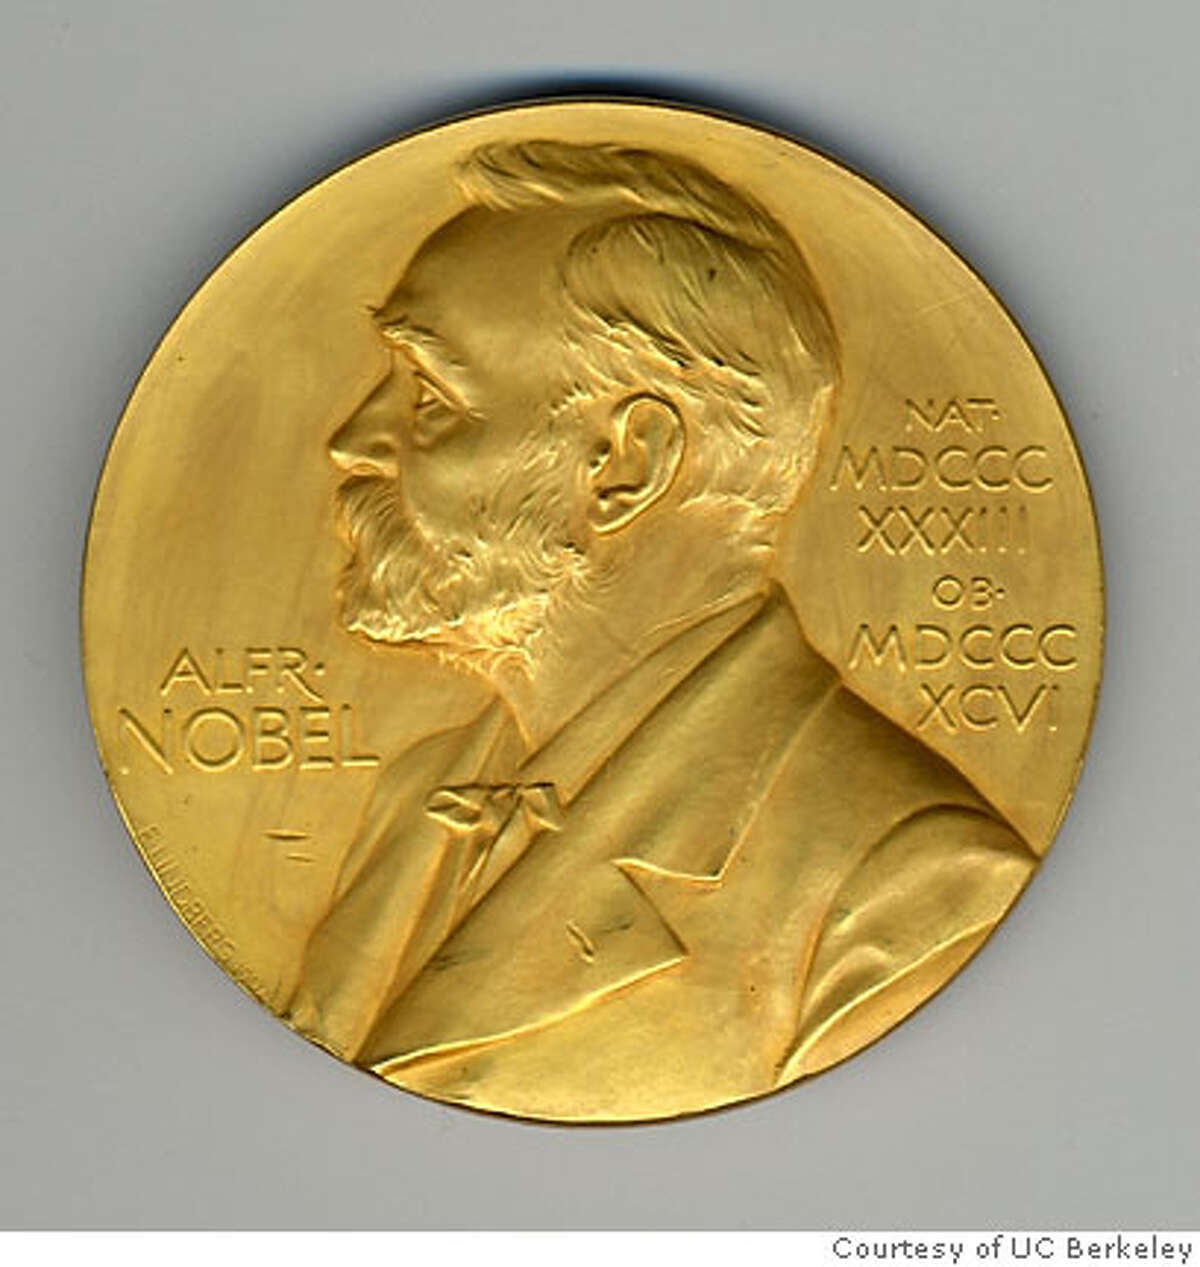 Nobel Prize medal. Credit: Courtesy of UC Berkeley